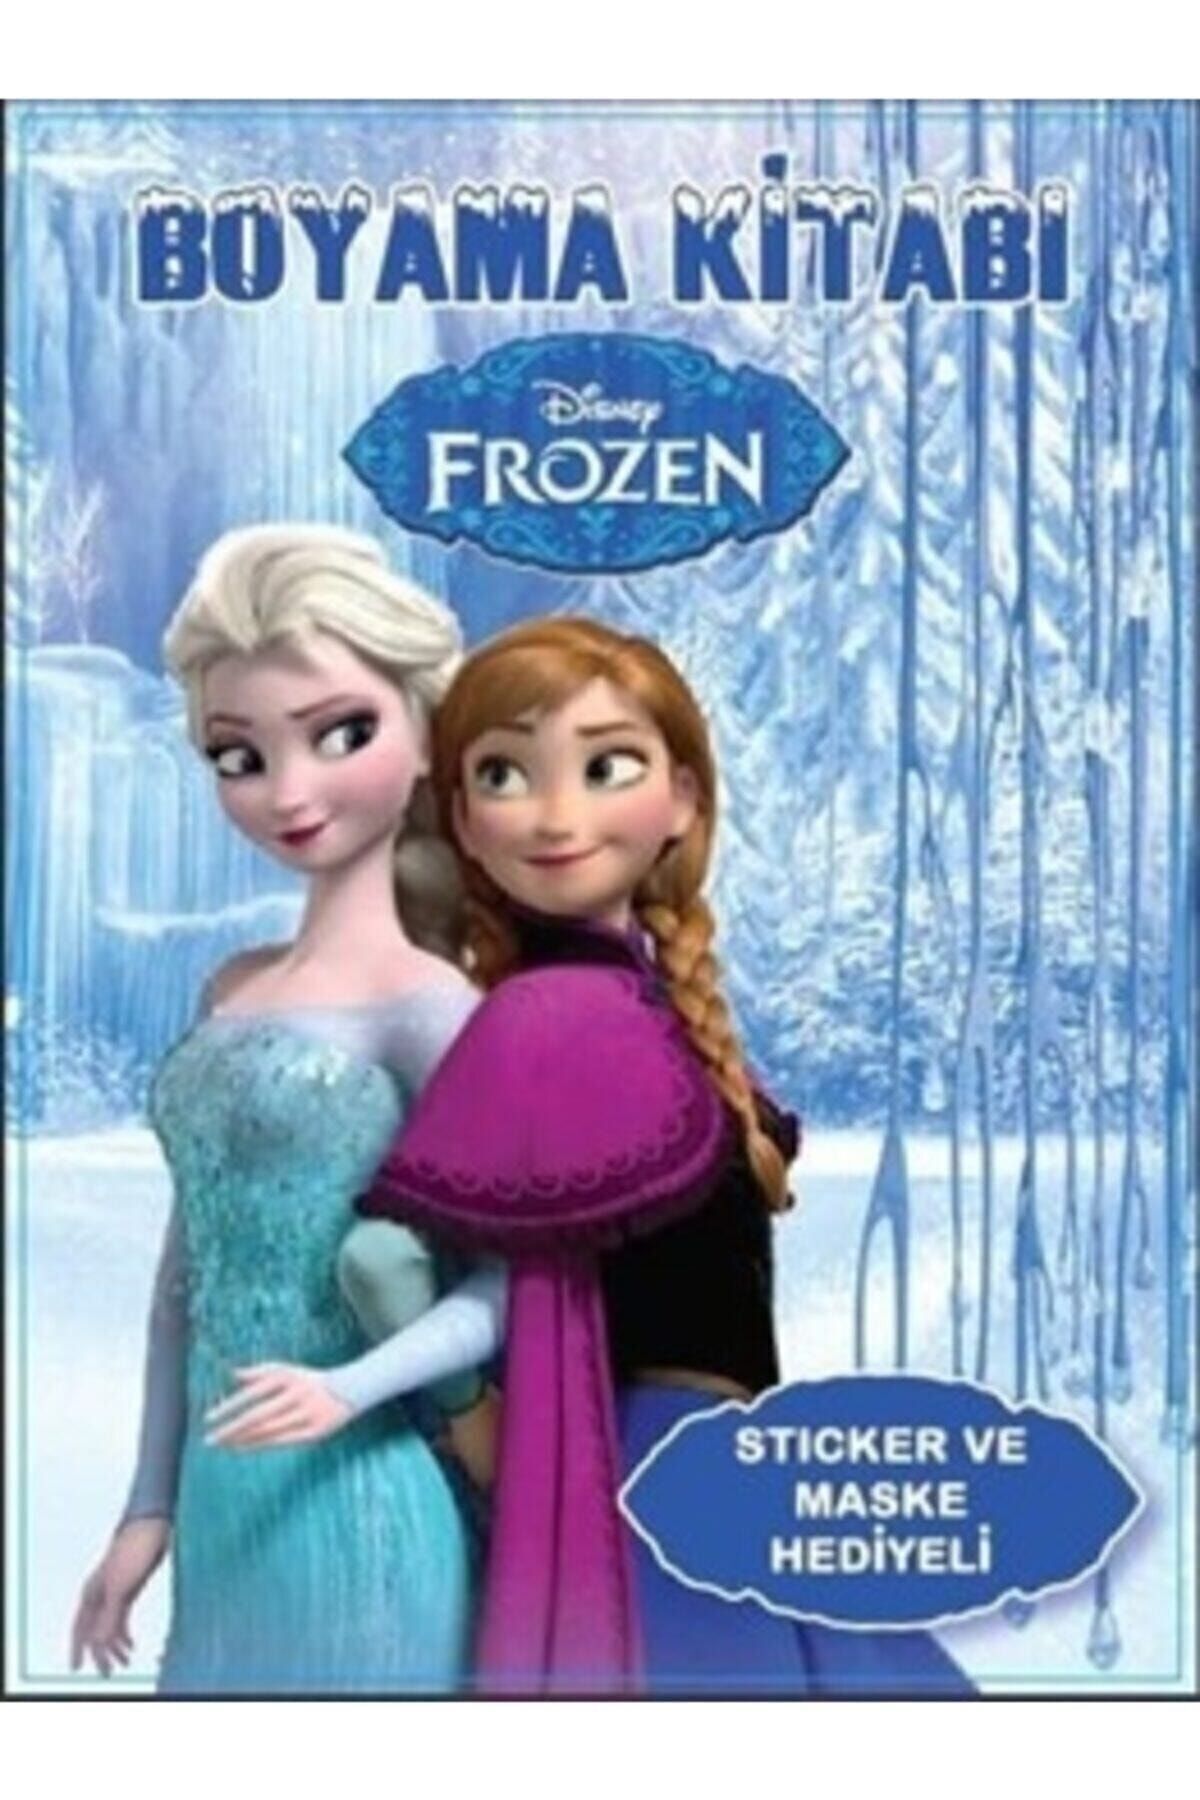 PapatyamPartiEvi Frozen Elsa Karlar Ülkesi Boyama Kitabı - Sticker Ve Maskeli